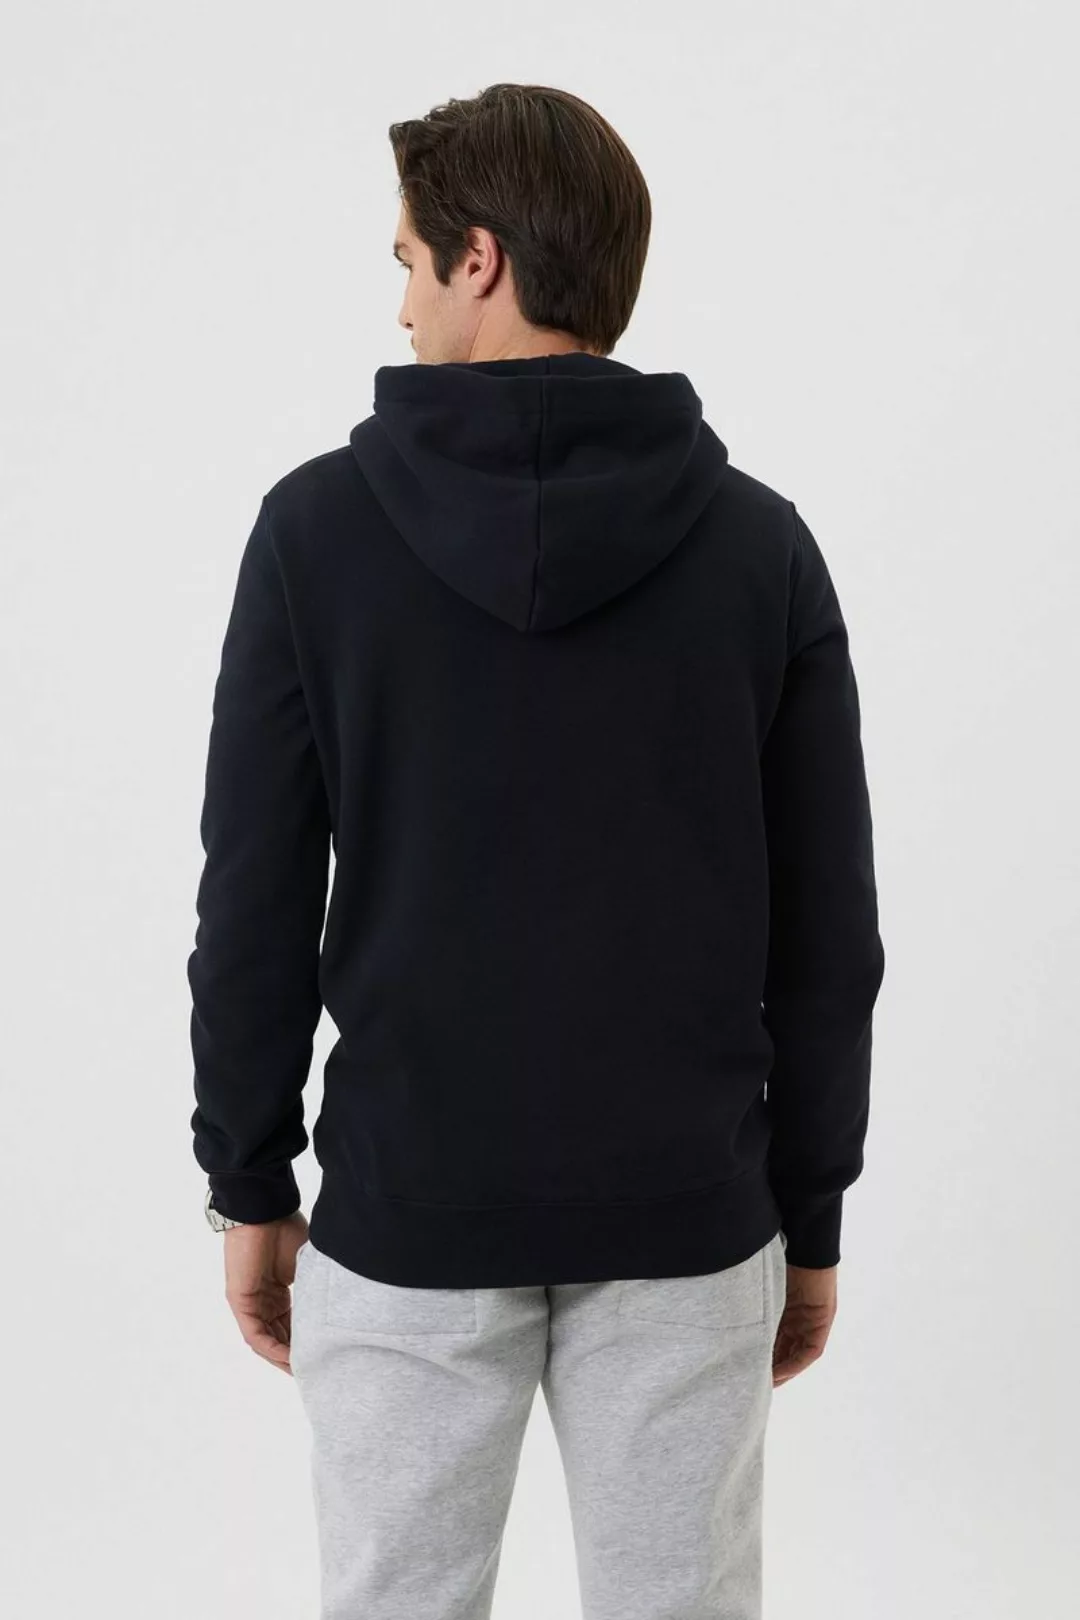 Bjorn Borg Centre Hoodie Jacket Schwarz - Größe XL günstig online kaufen